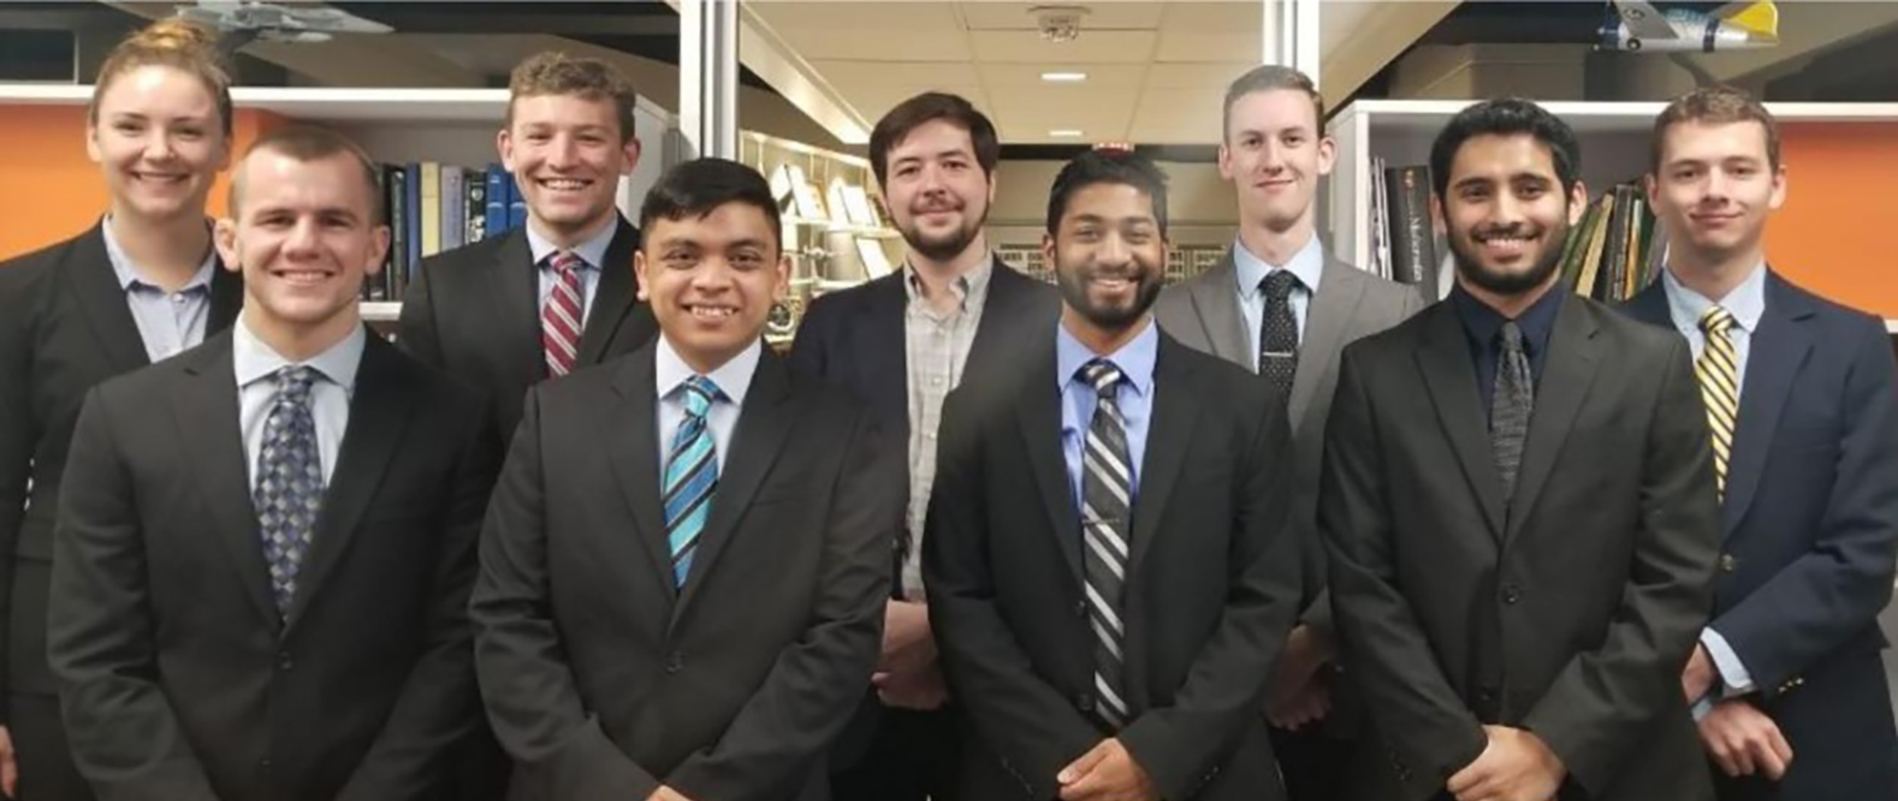 Virginia Tech 2018-2019 Group photo.